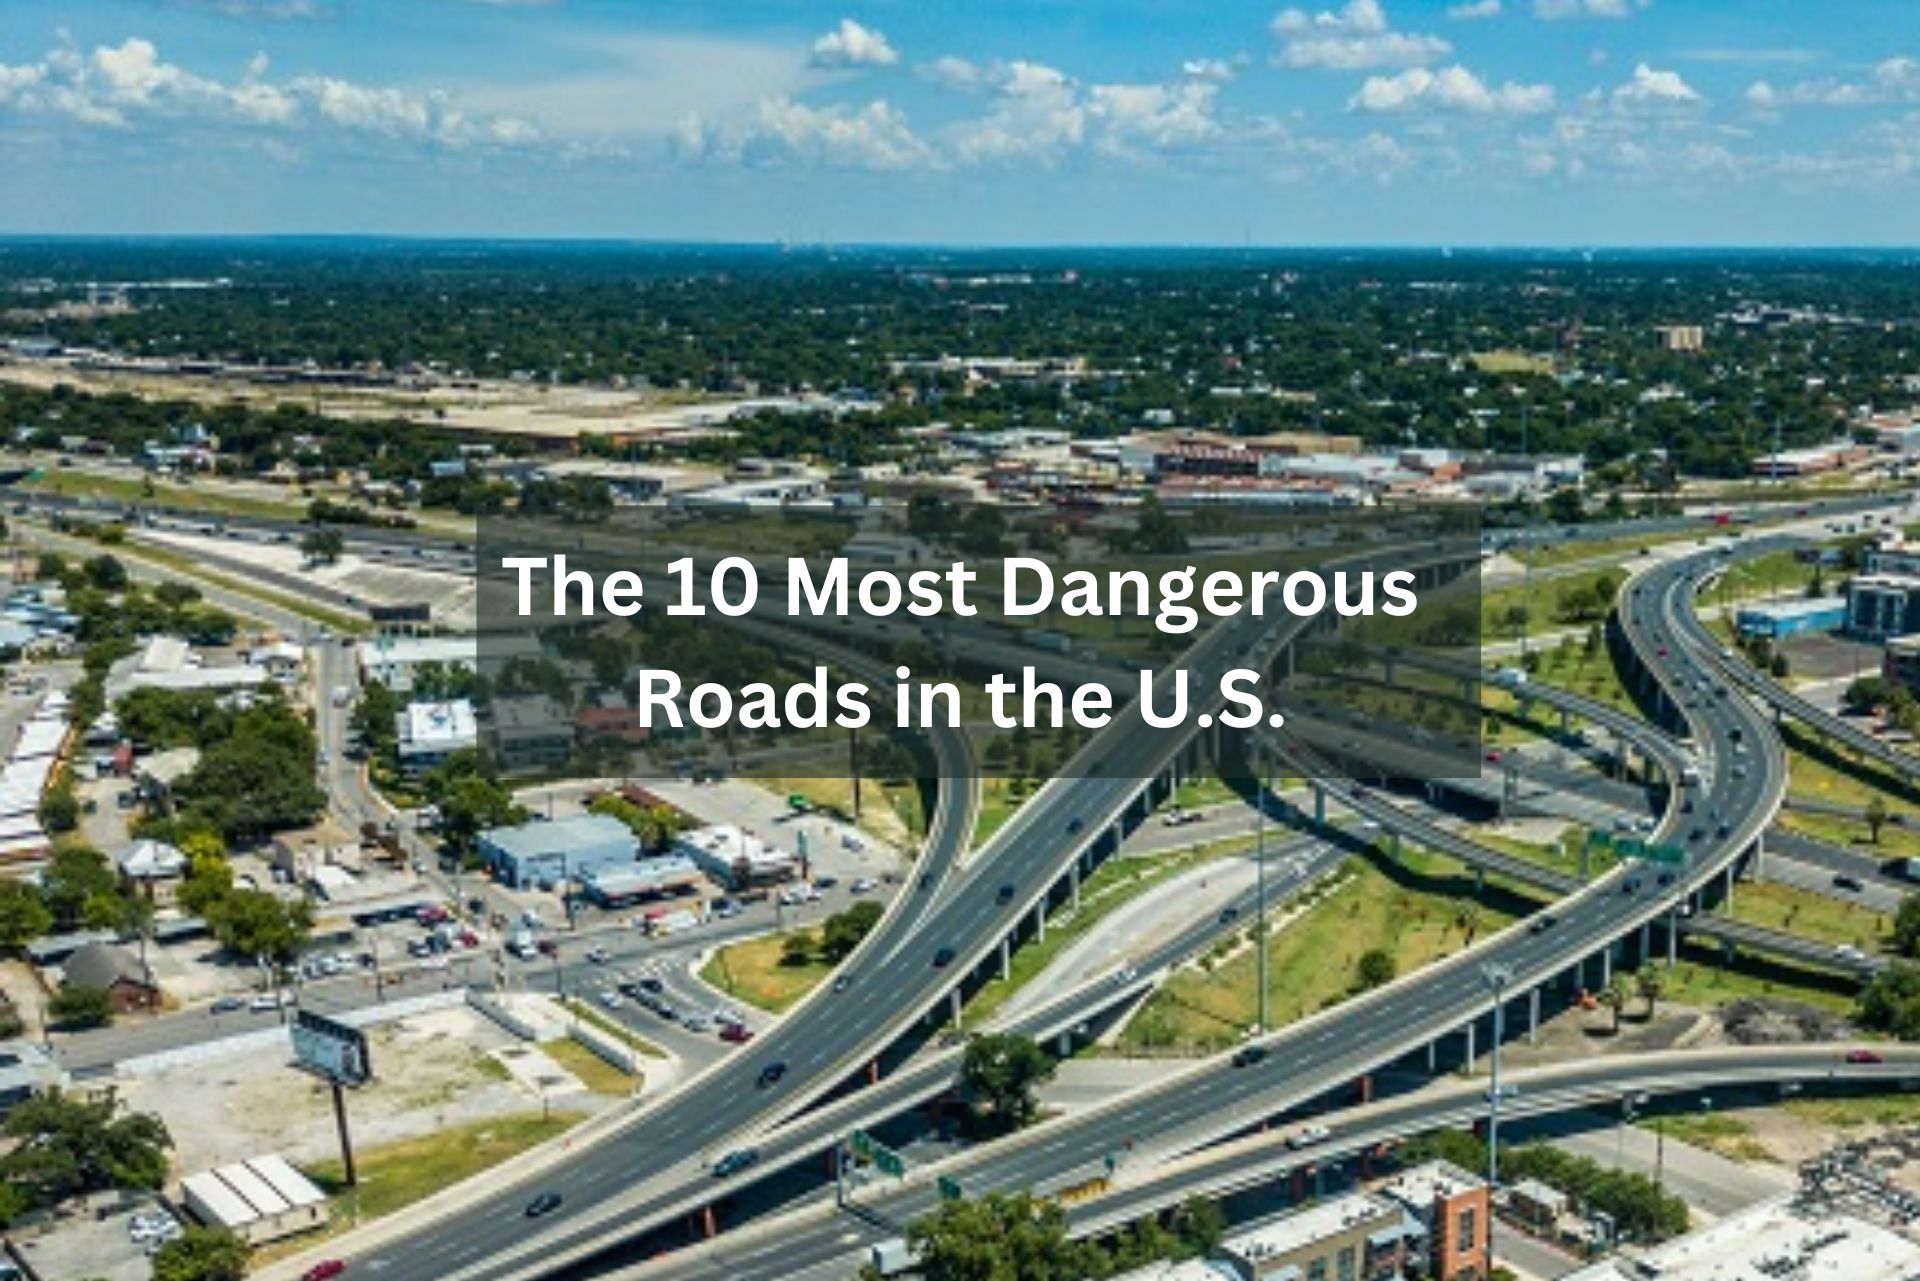 Most Dangerous Roads in the U.S.